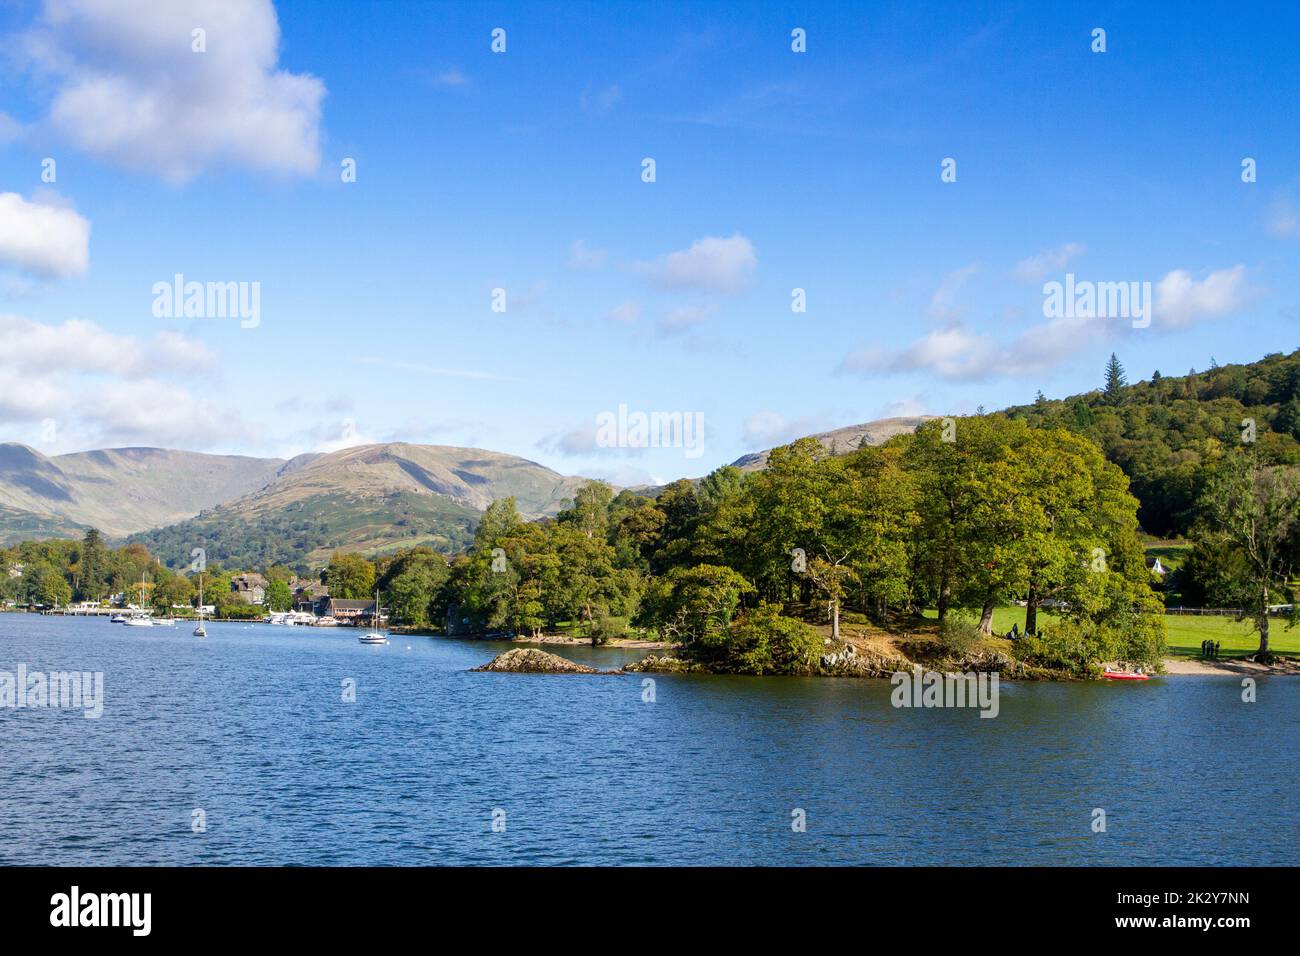 Lagos ingleses, paisajes del Lake District, barcos turísticos, muelles y amarraderos en Cumbria, Reino Unido Foto de stock